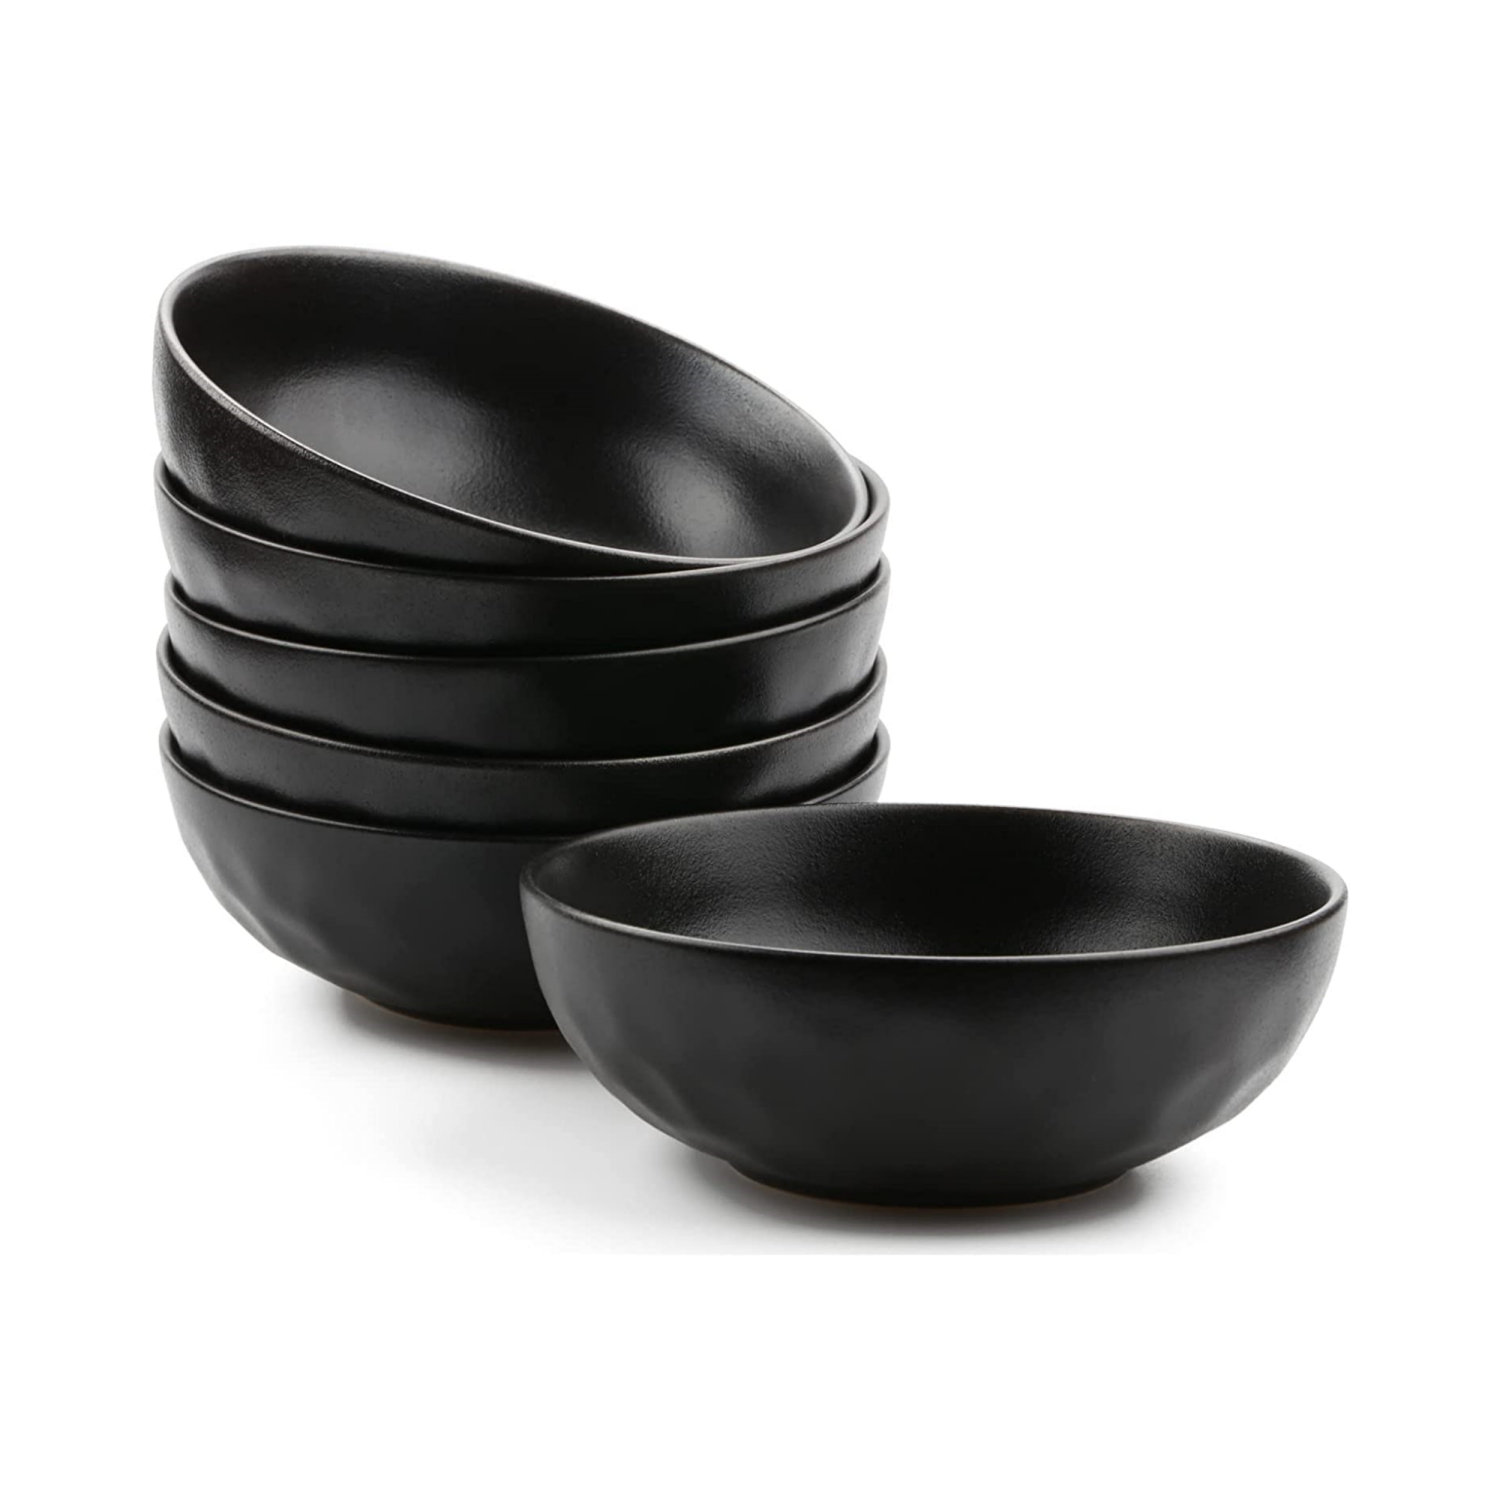 https://assets.wfcdn.com/im/01237996/compr-r85/2364/236463440/32-oz-black-ceramic-salad-bowls-set-of-6.jpg